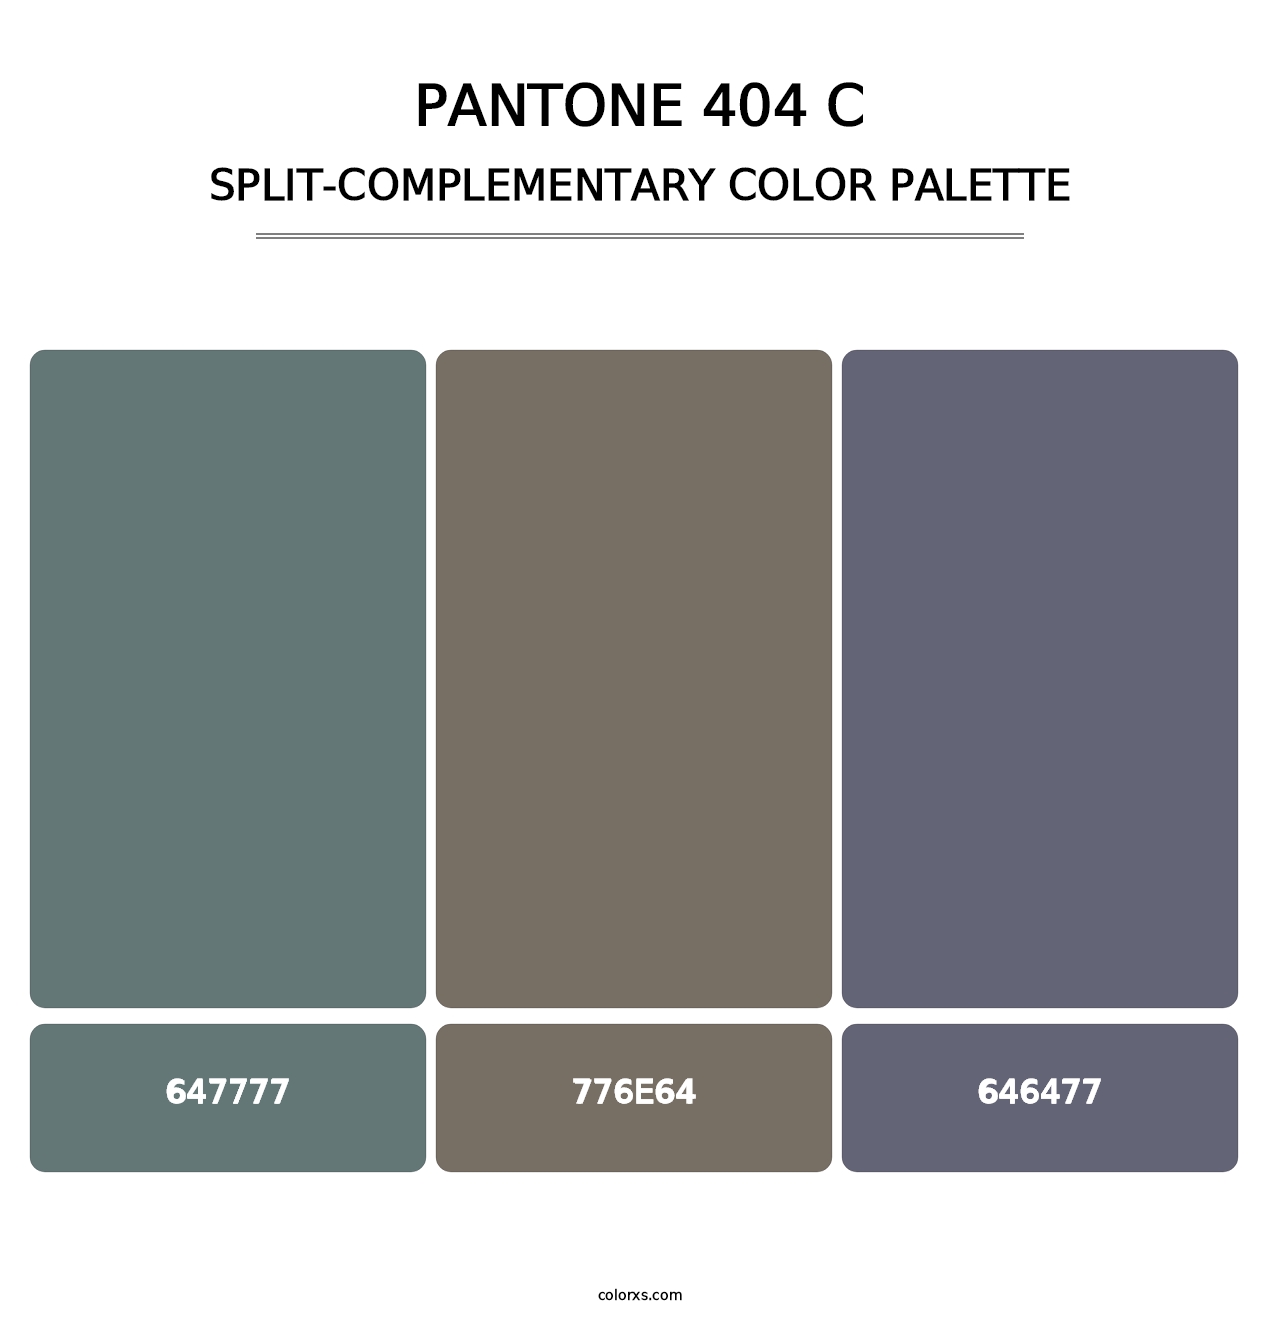 PANTONE 404 C - Split-Complementary Color Palette